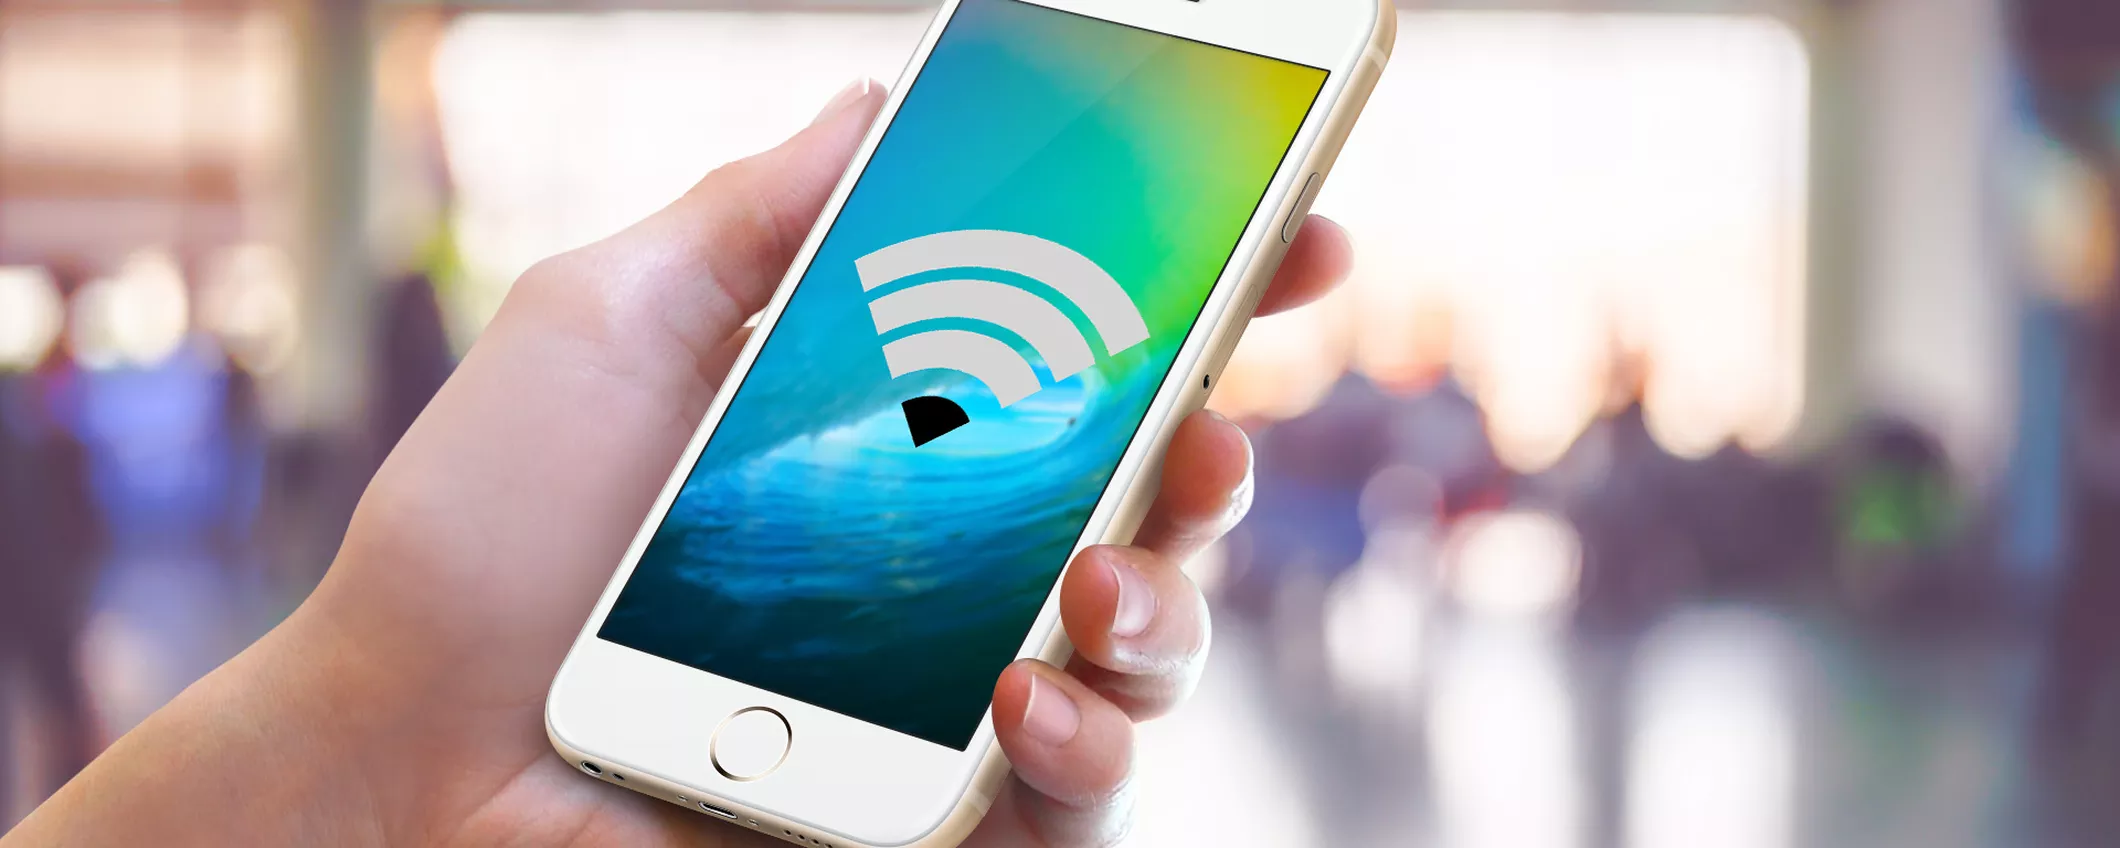 KRACK, la falla WiFi che colpisce smartphone e router (ma non Mac e iPhone)